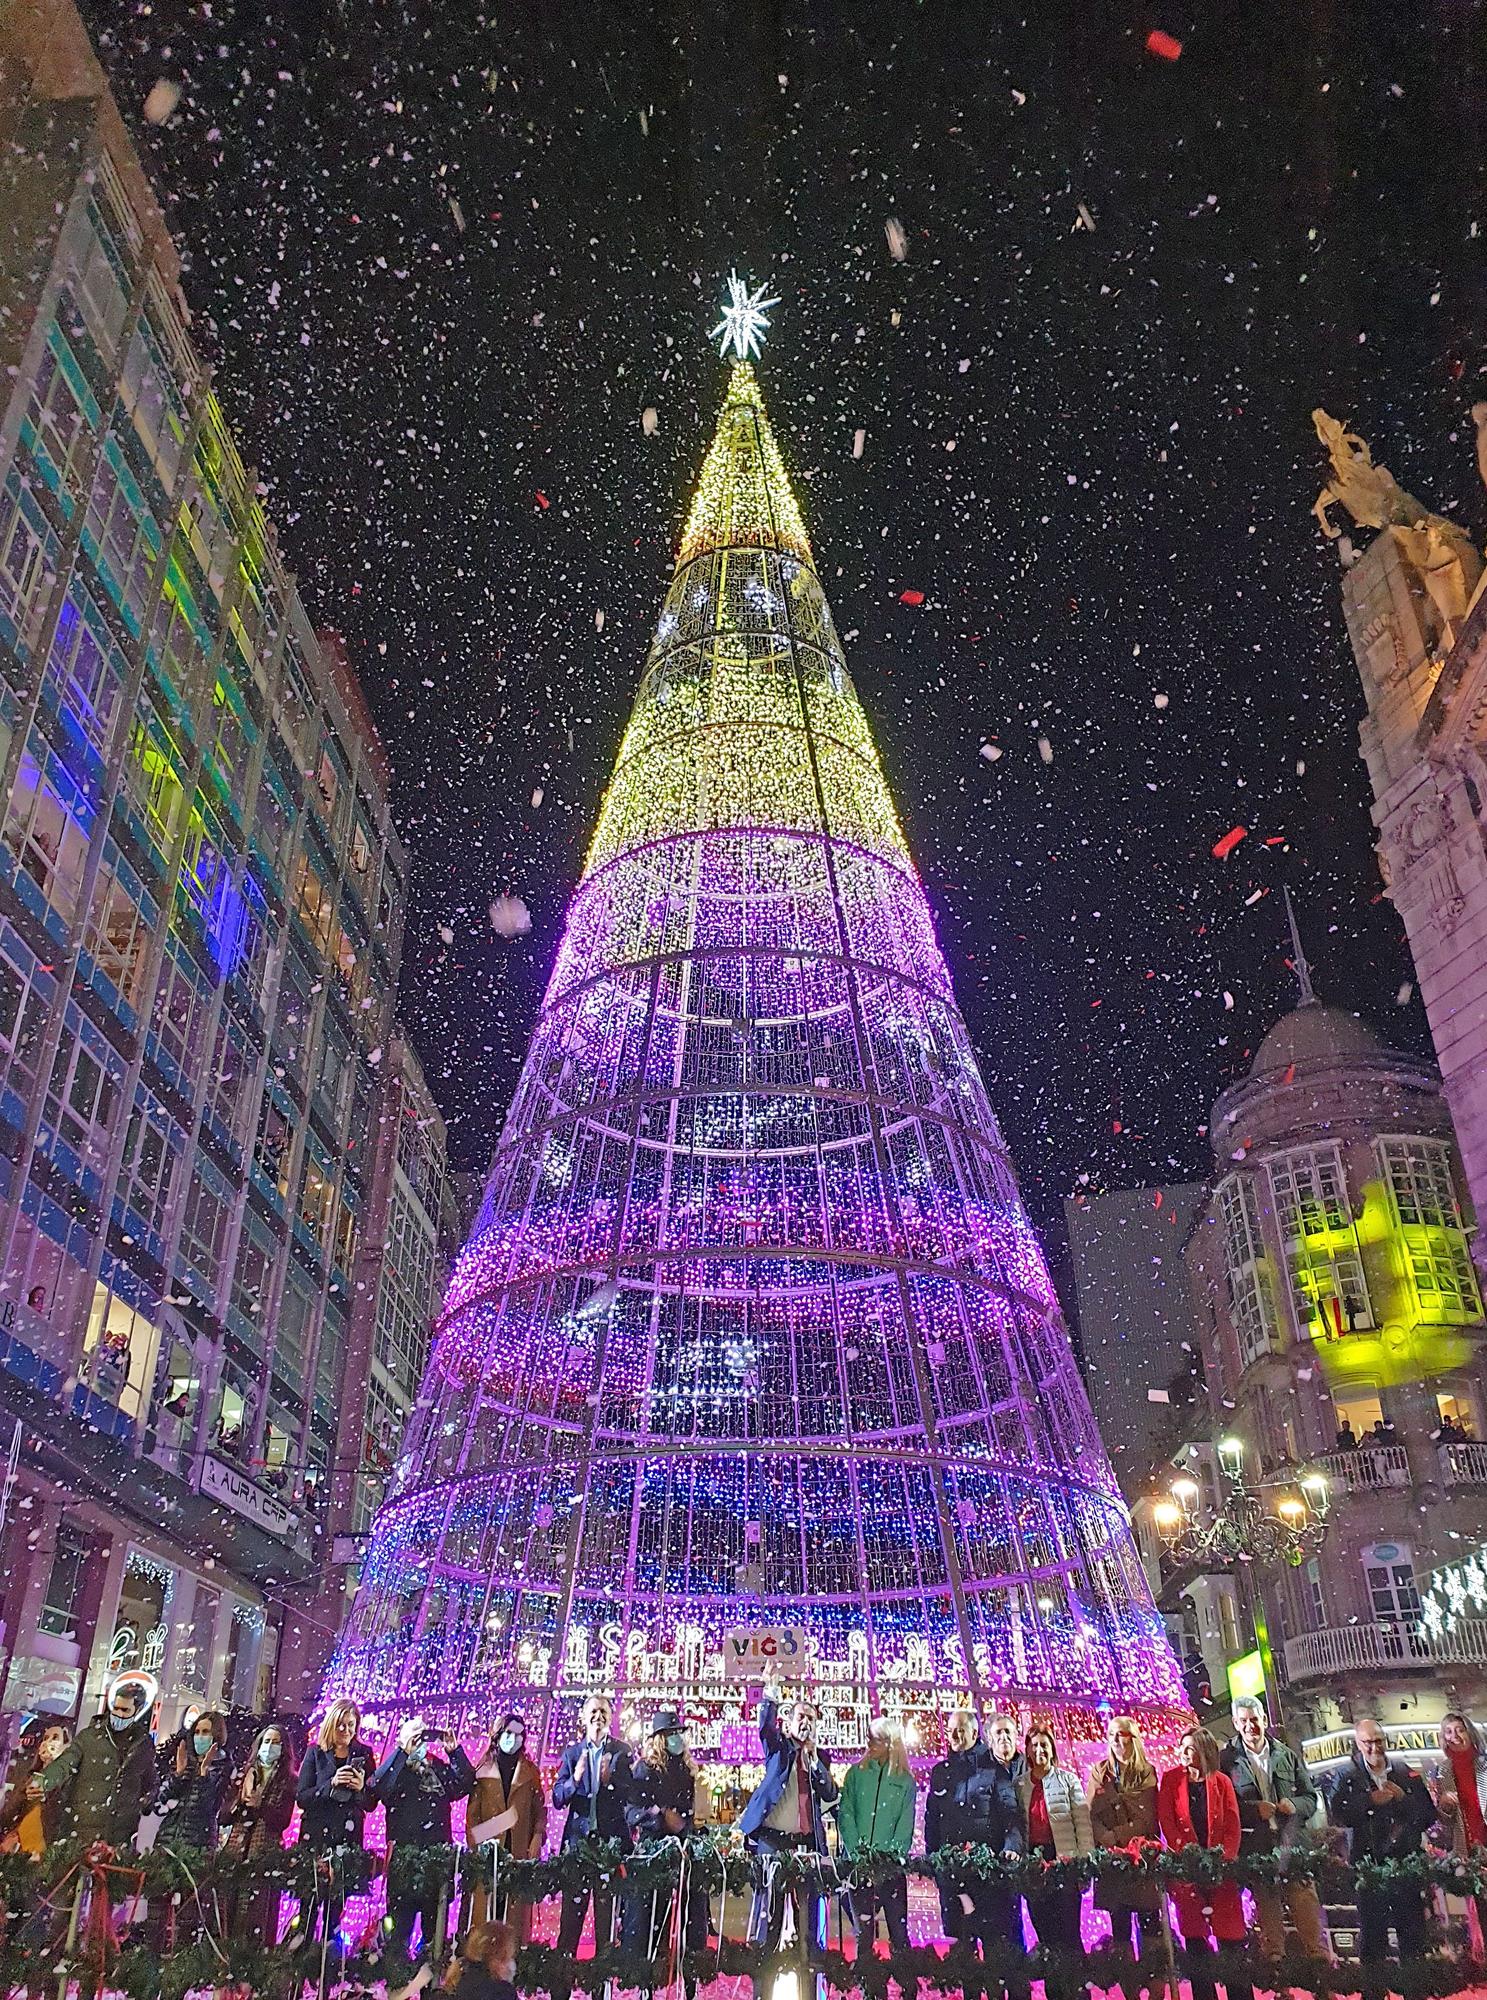 Las mejores imágenes del encendido de la Navidad en Vigo